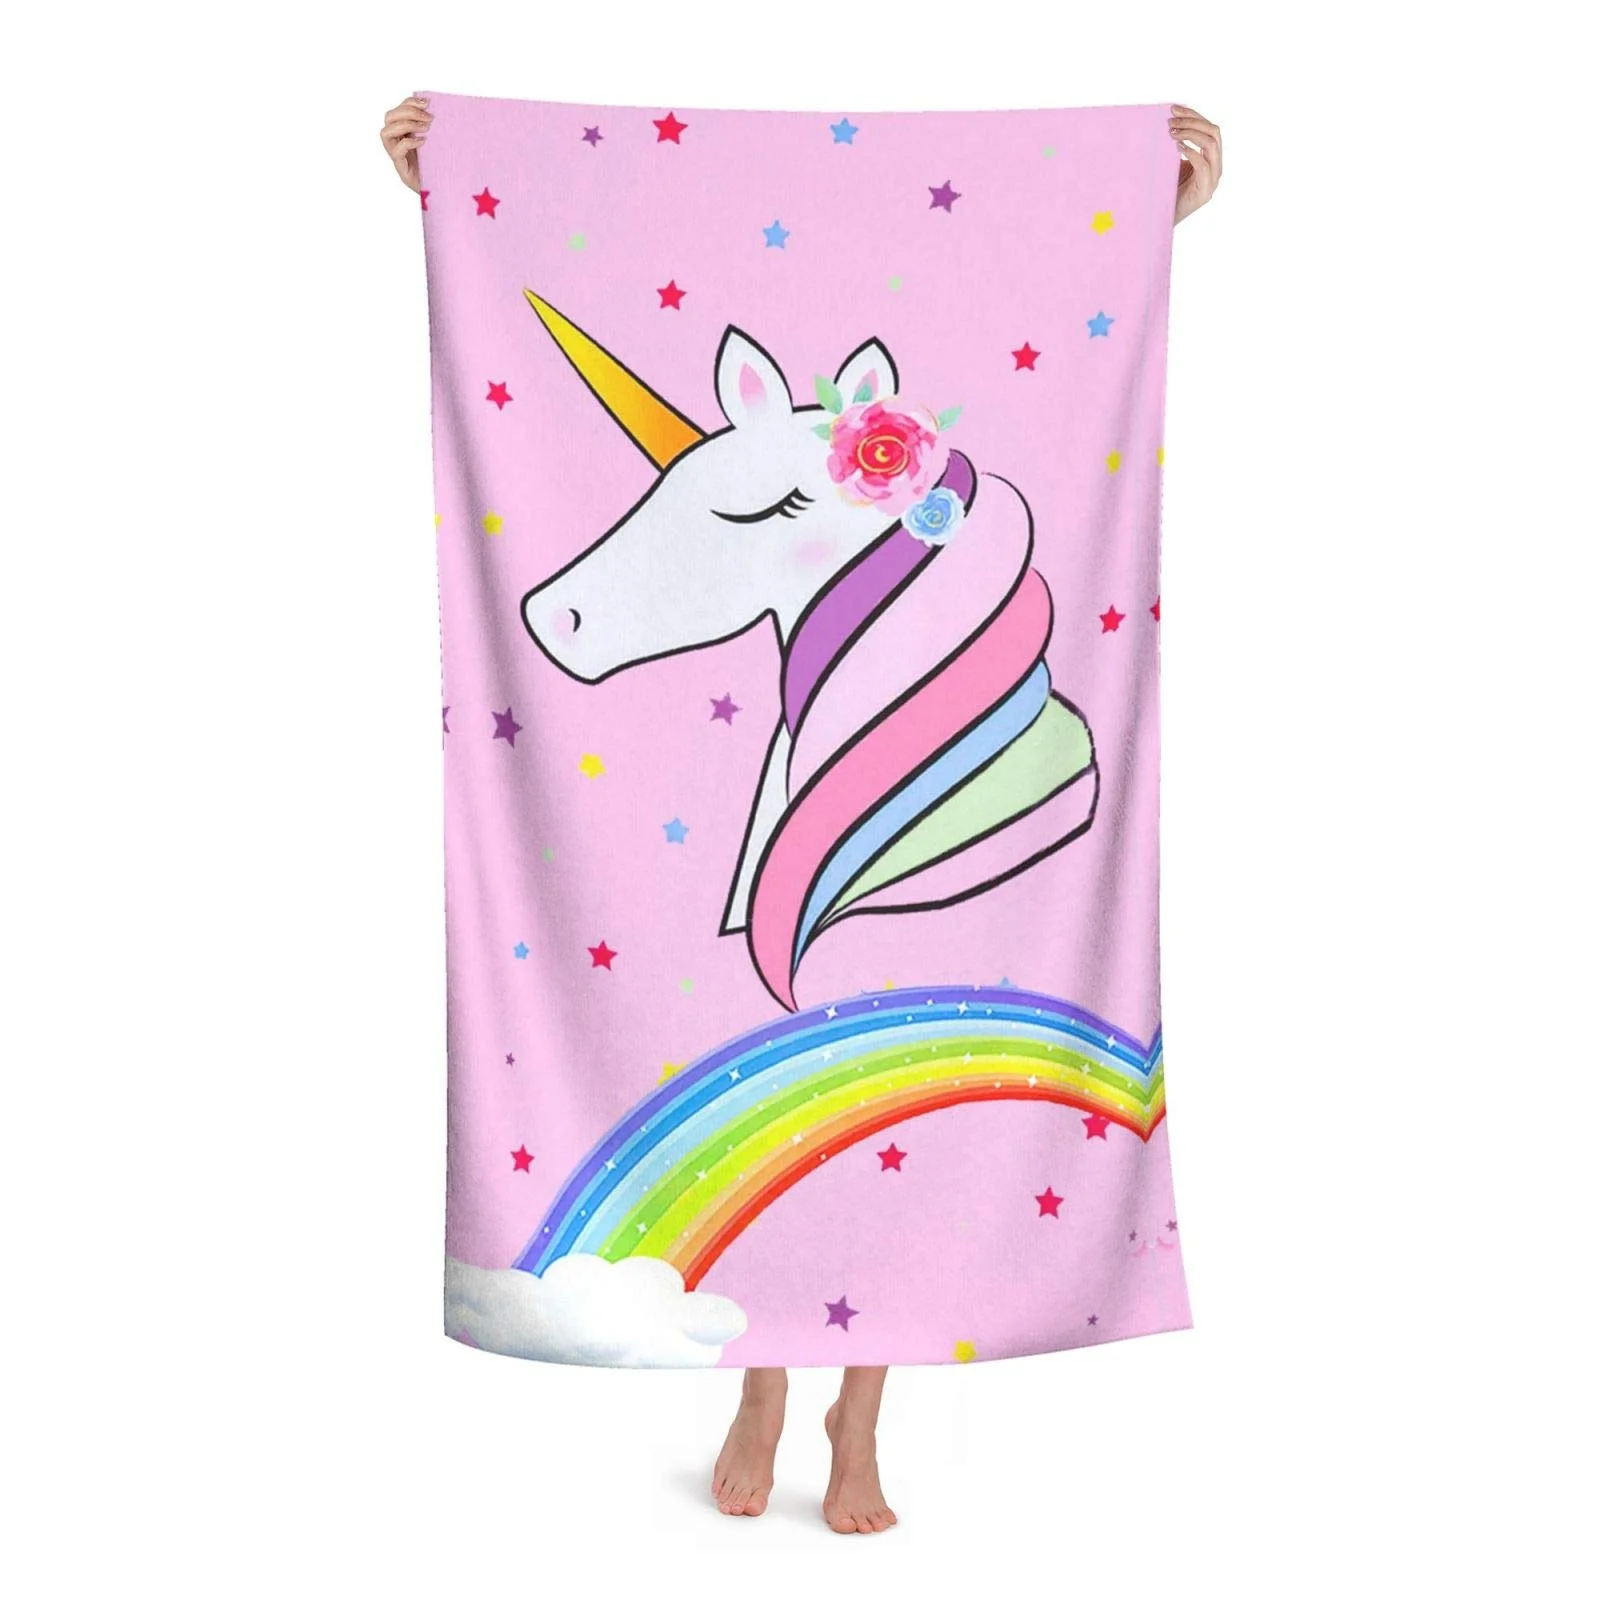 

Детское пляжное полотенце из микрофибры с единорогом, быстросохнущее, без песка, супервпитывающее, розовое, Радужное, портативное полотенц...